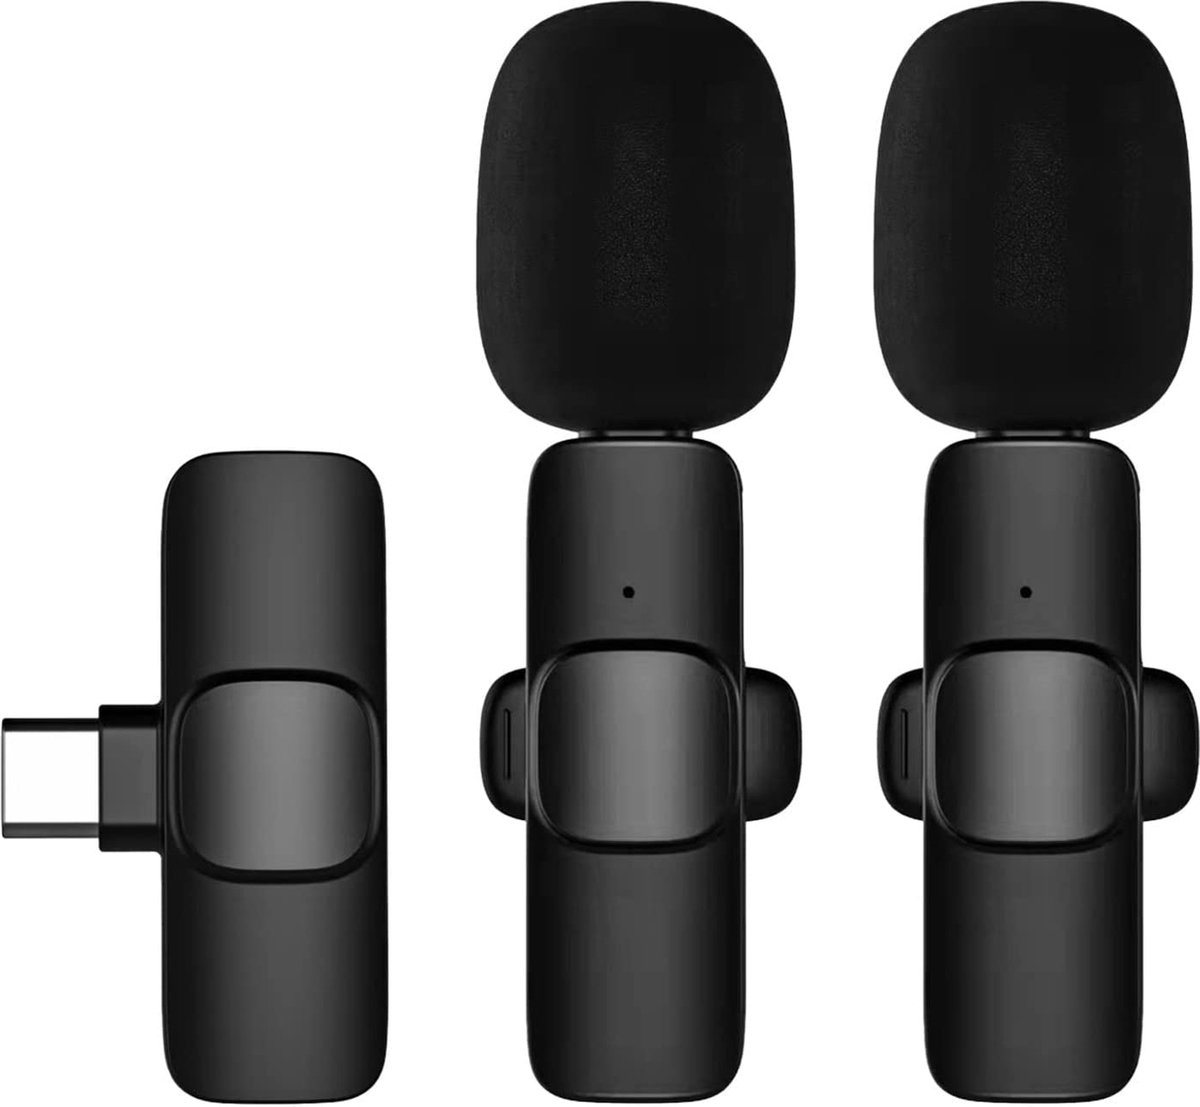 Micro Cravate Sans Fil Iphone - 20m - Noir